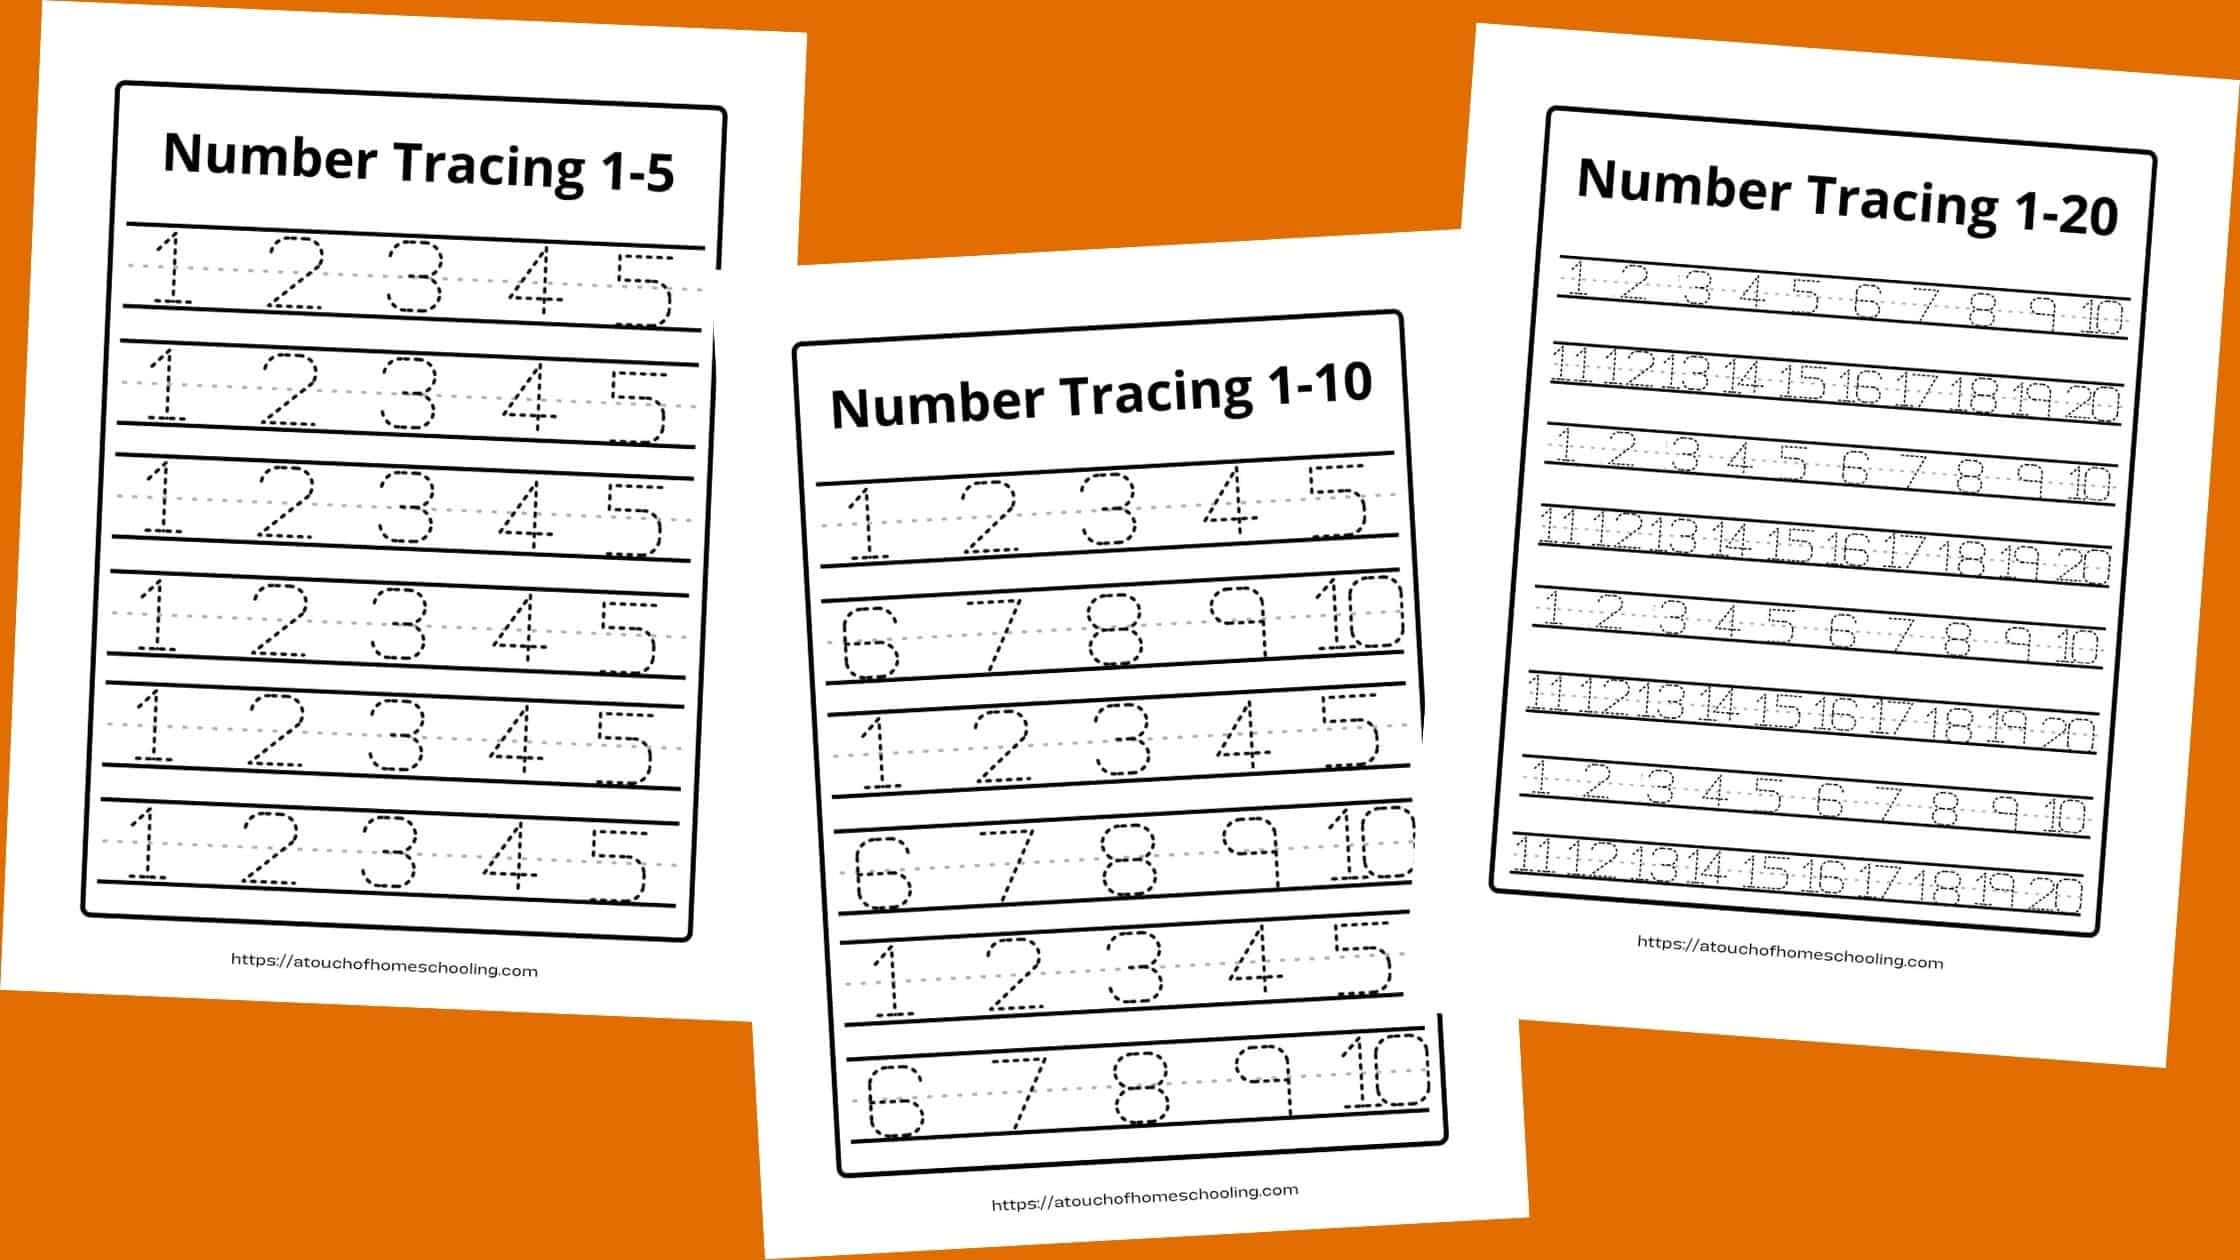 Number Tracing 1-20 PDF - Free Printable Worksheets